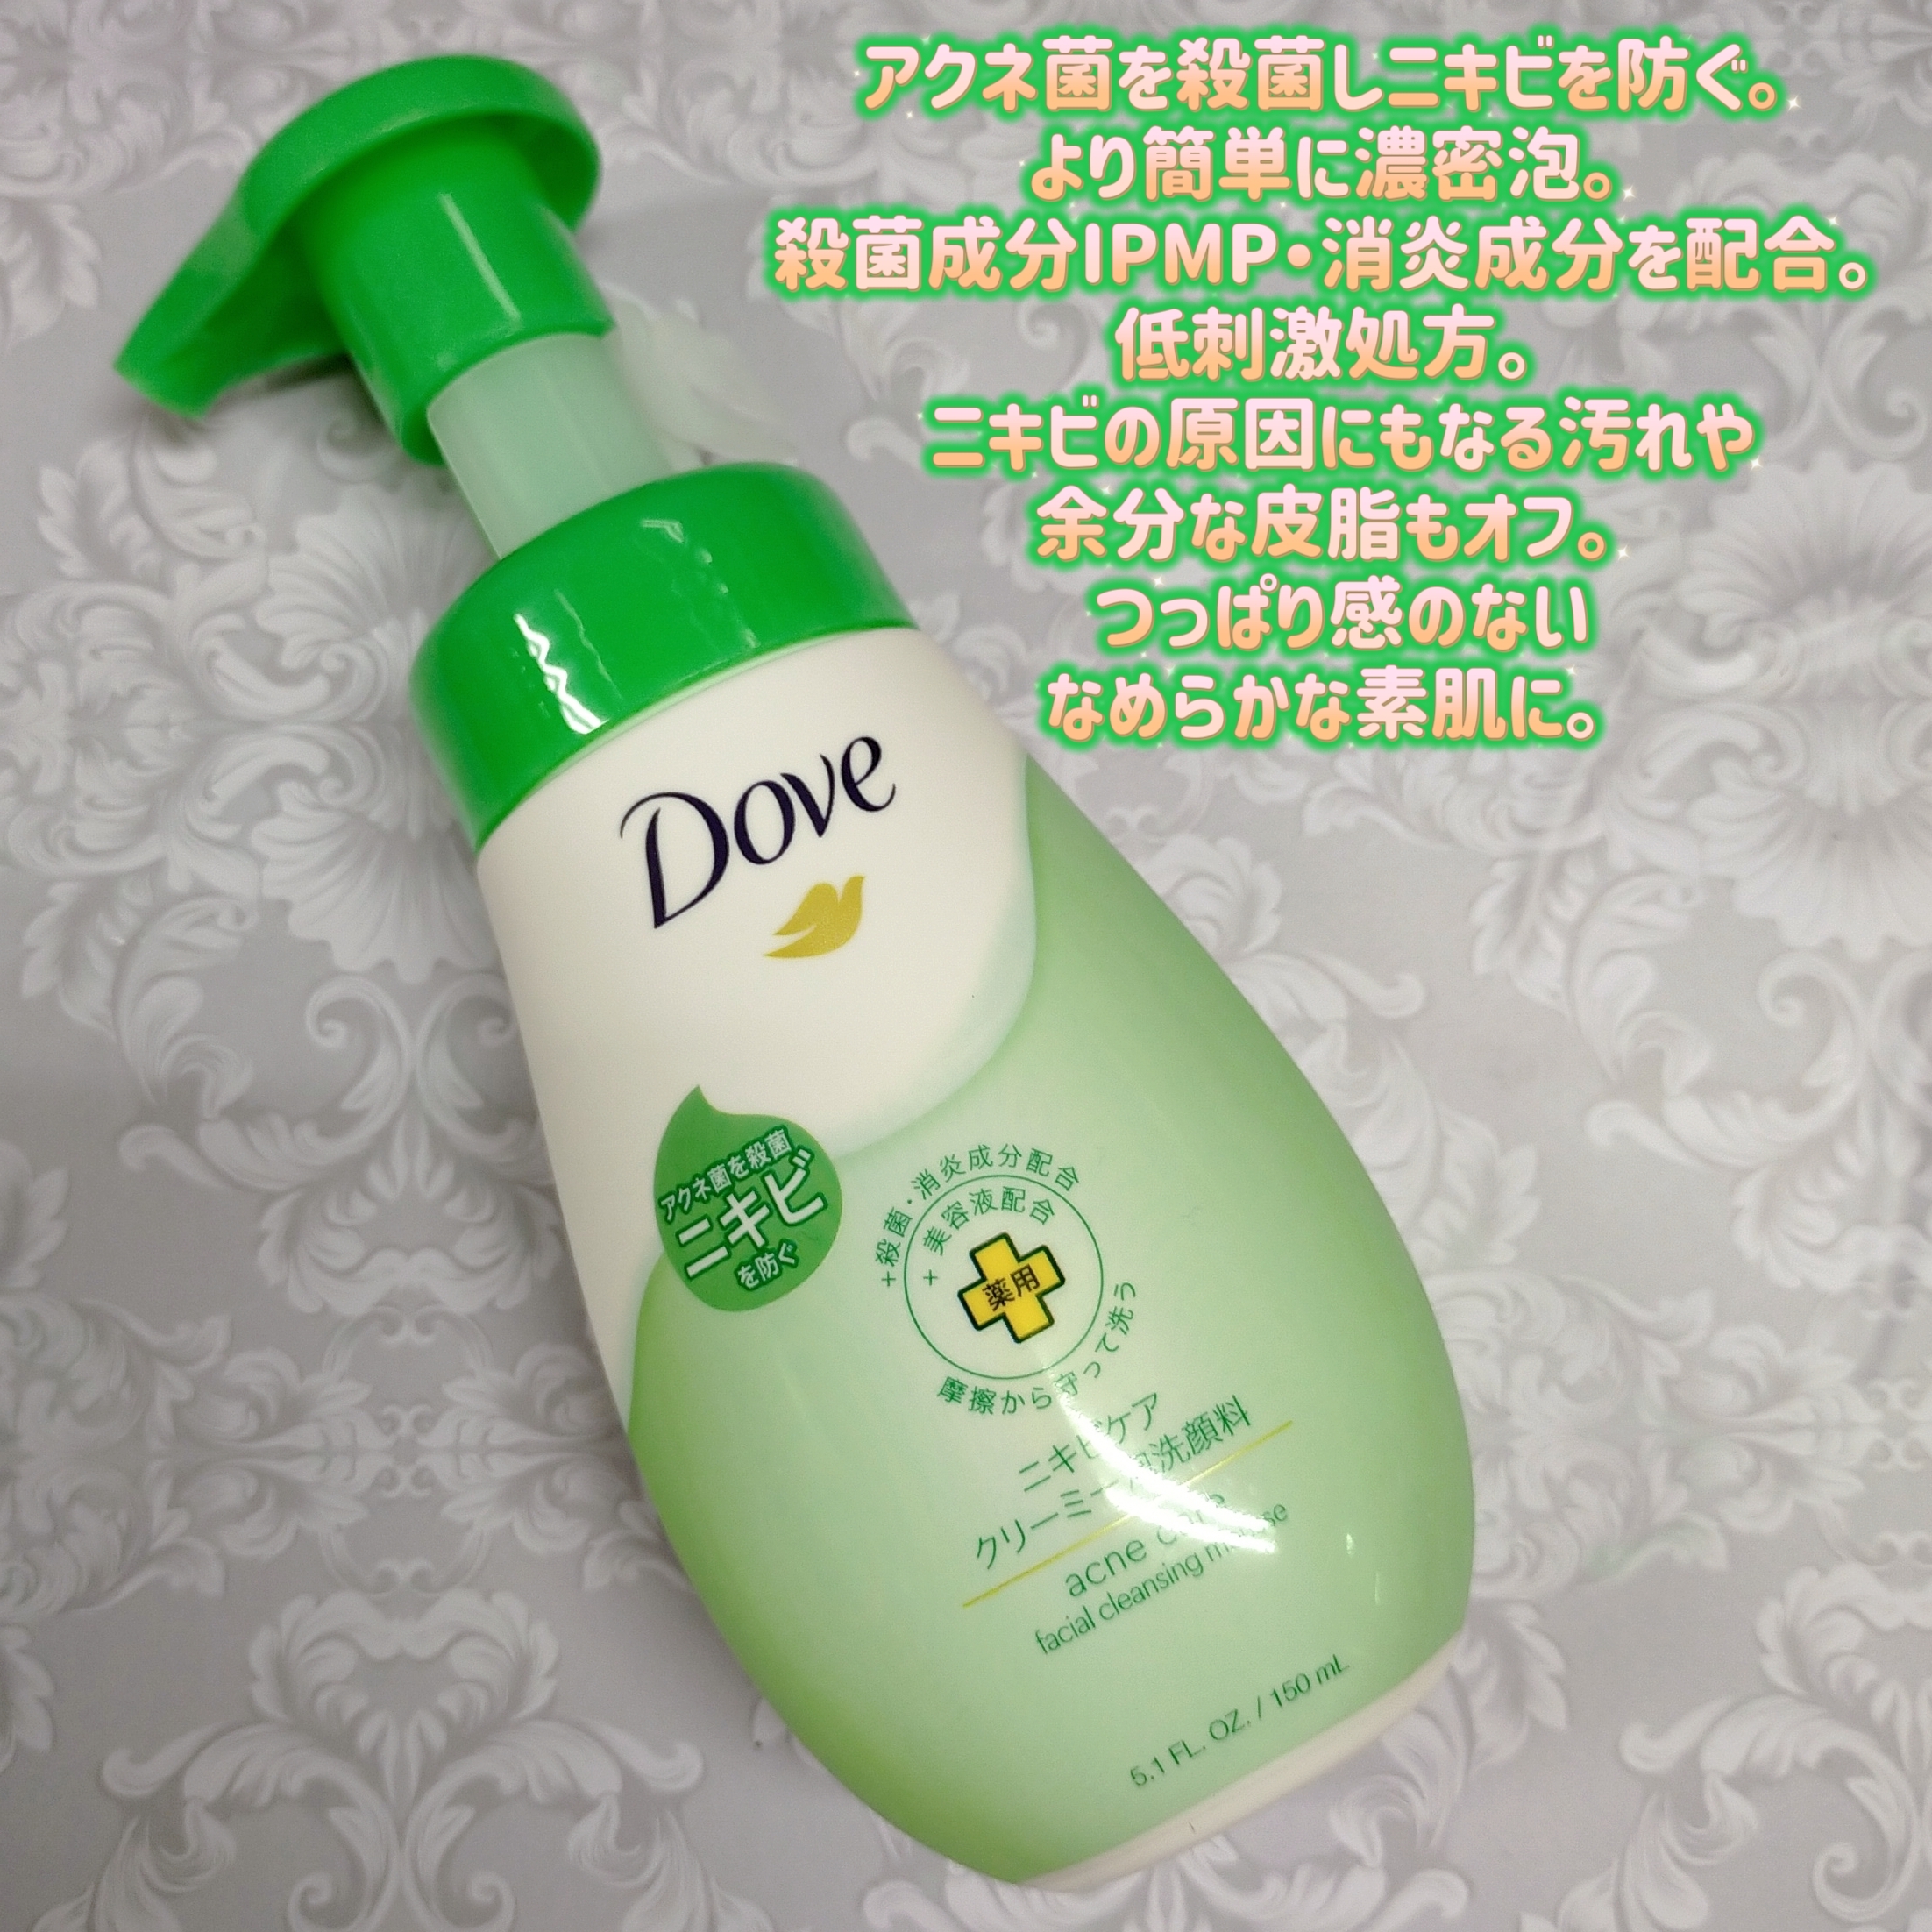 Dove(ダヴ) ニキビケア クリーミー泡洗顔料の良い点・メリットに関するみこさんの口コミ画像1